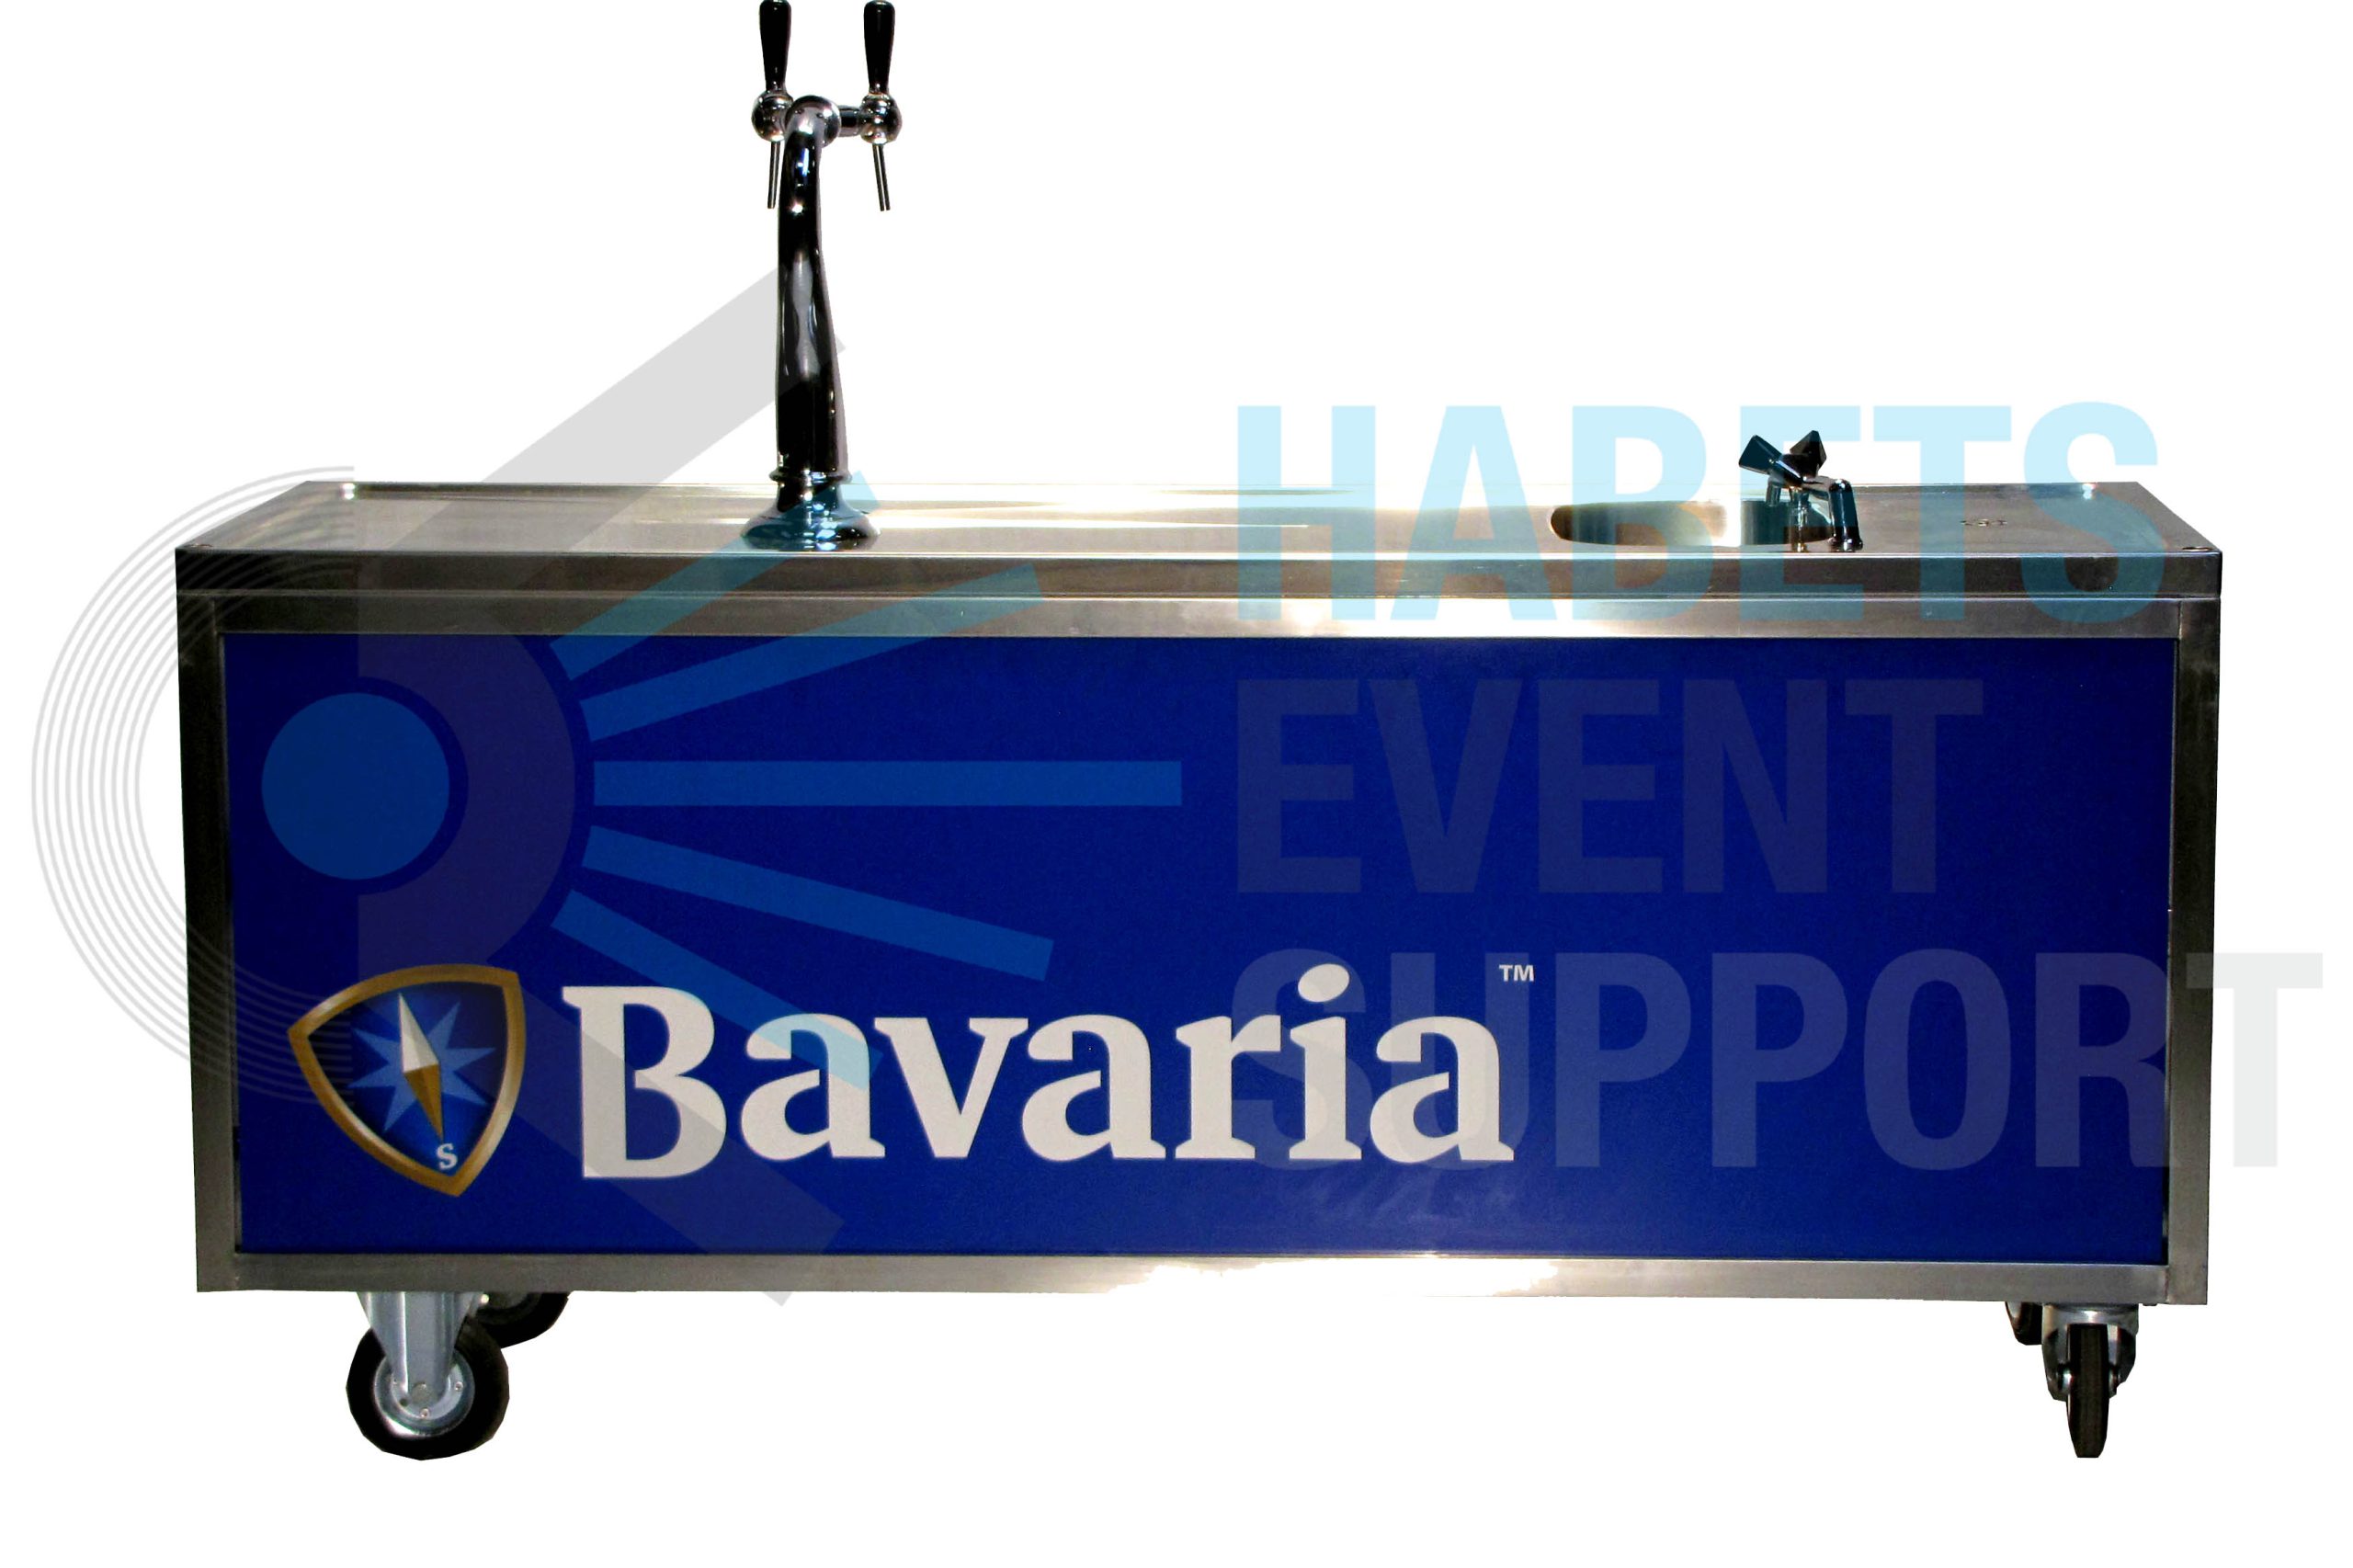 Bavaria Bar.jpg